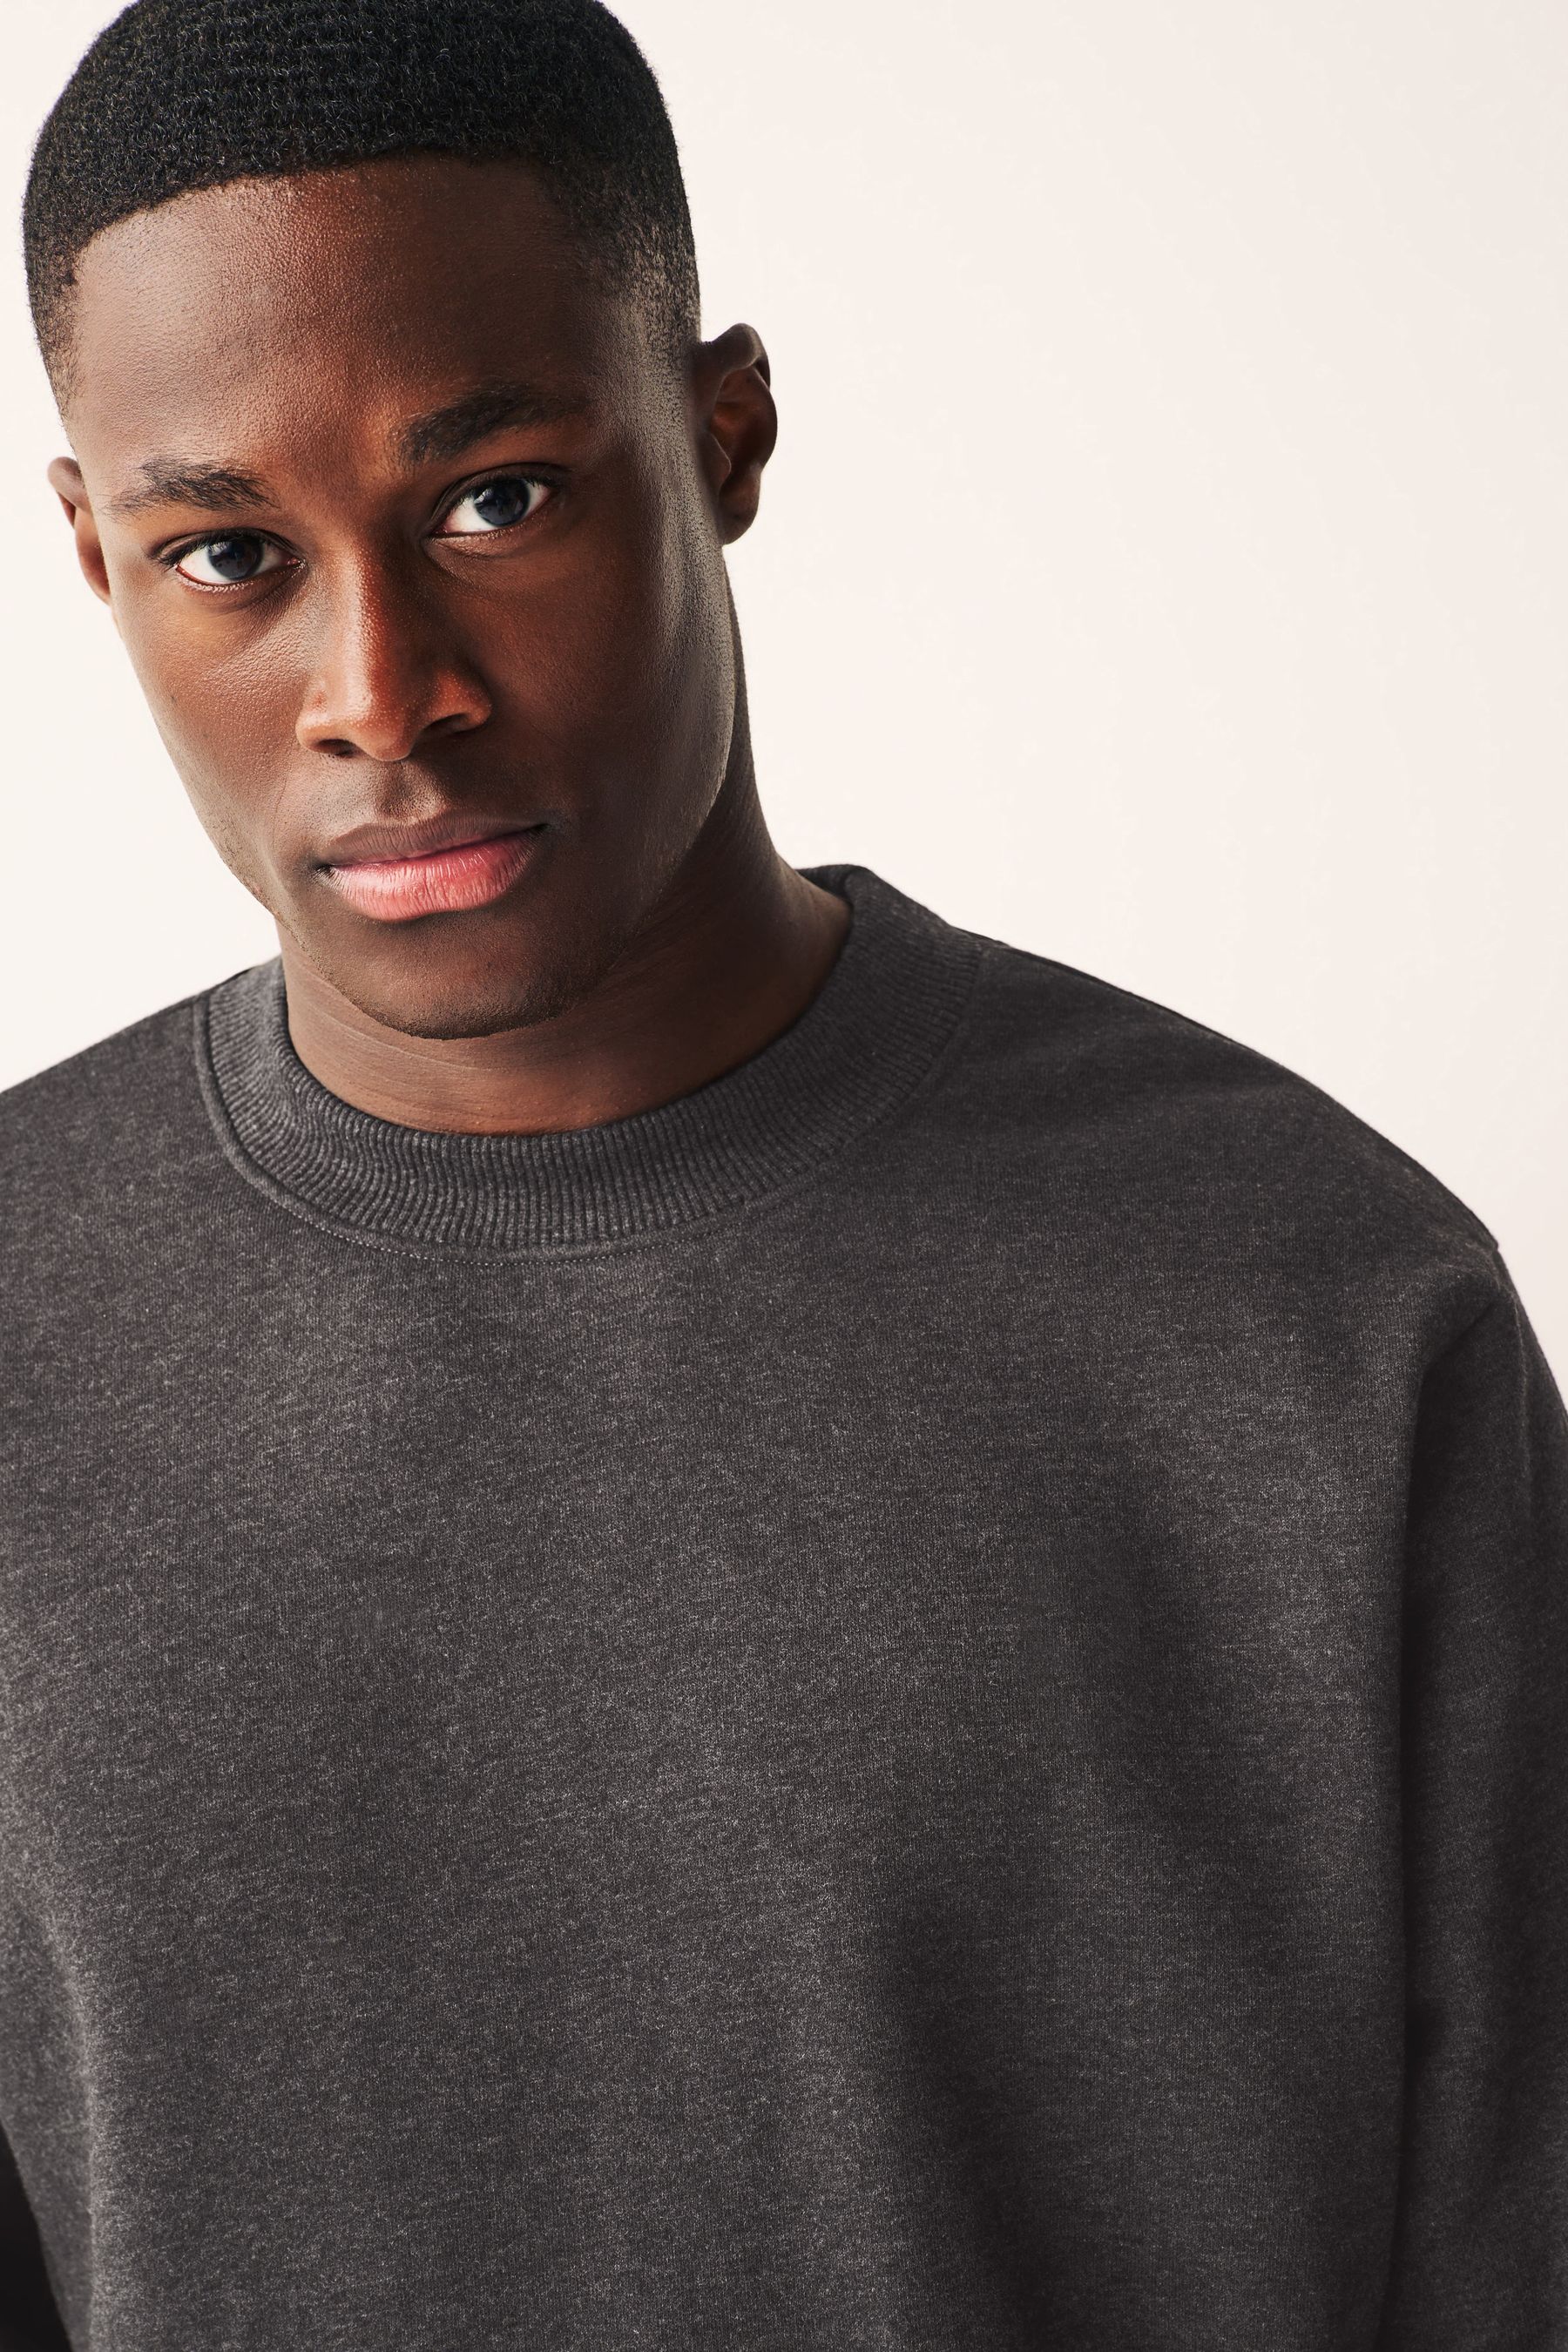 Buy Charcoal Grey Regular Fit Crew Sweatshirt from the Next UK online shop